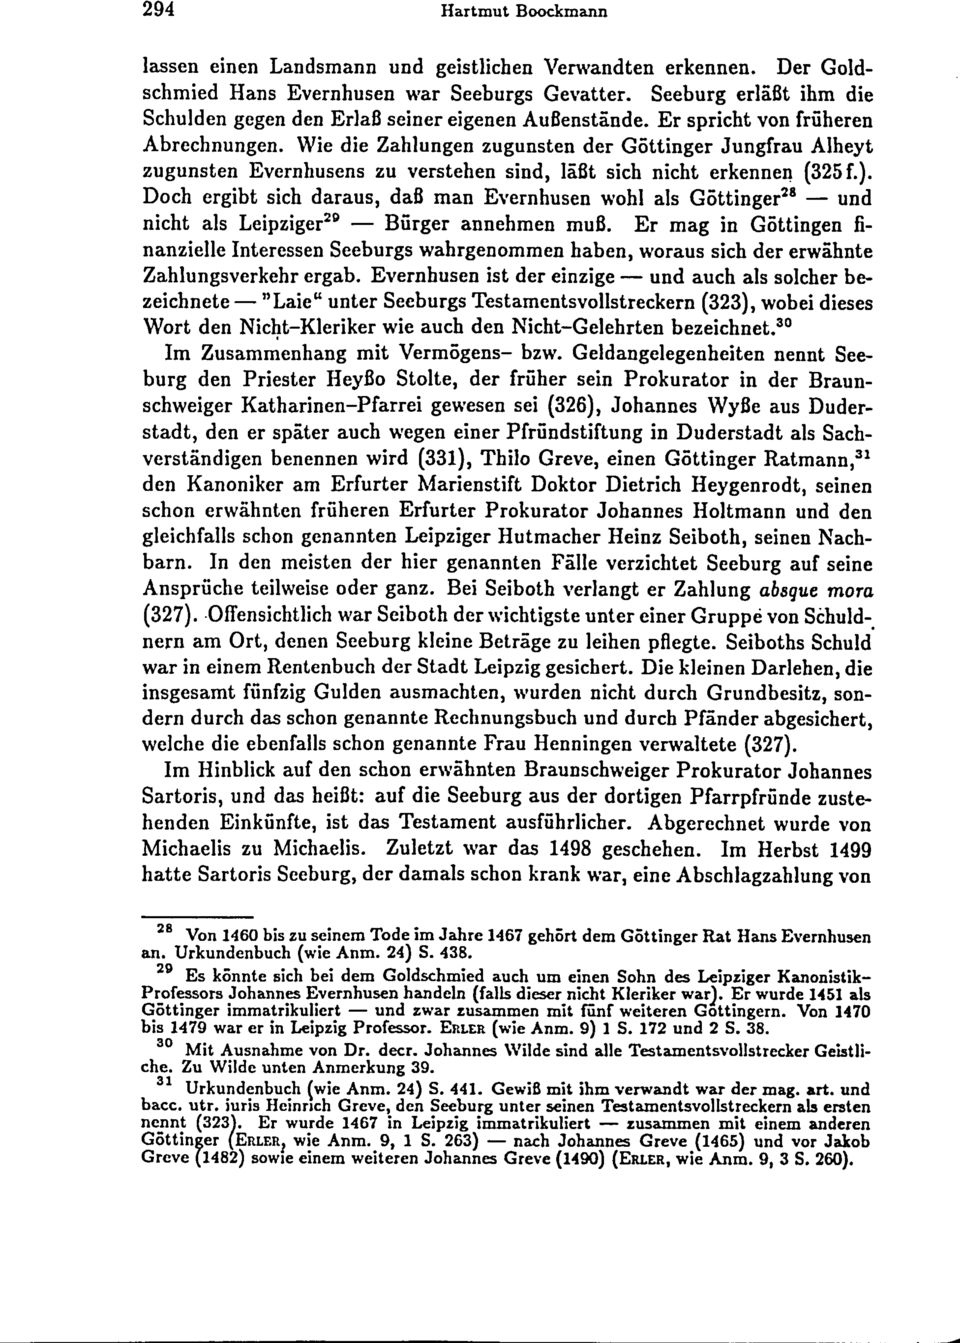 Wie die Zahlungen zugunsten der Göttinger Jungfrau Alheyt zugunsten Evernhusens zu verstehen sind, läßt sich nicht erkennen (325 f. ).